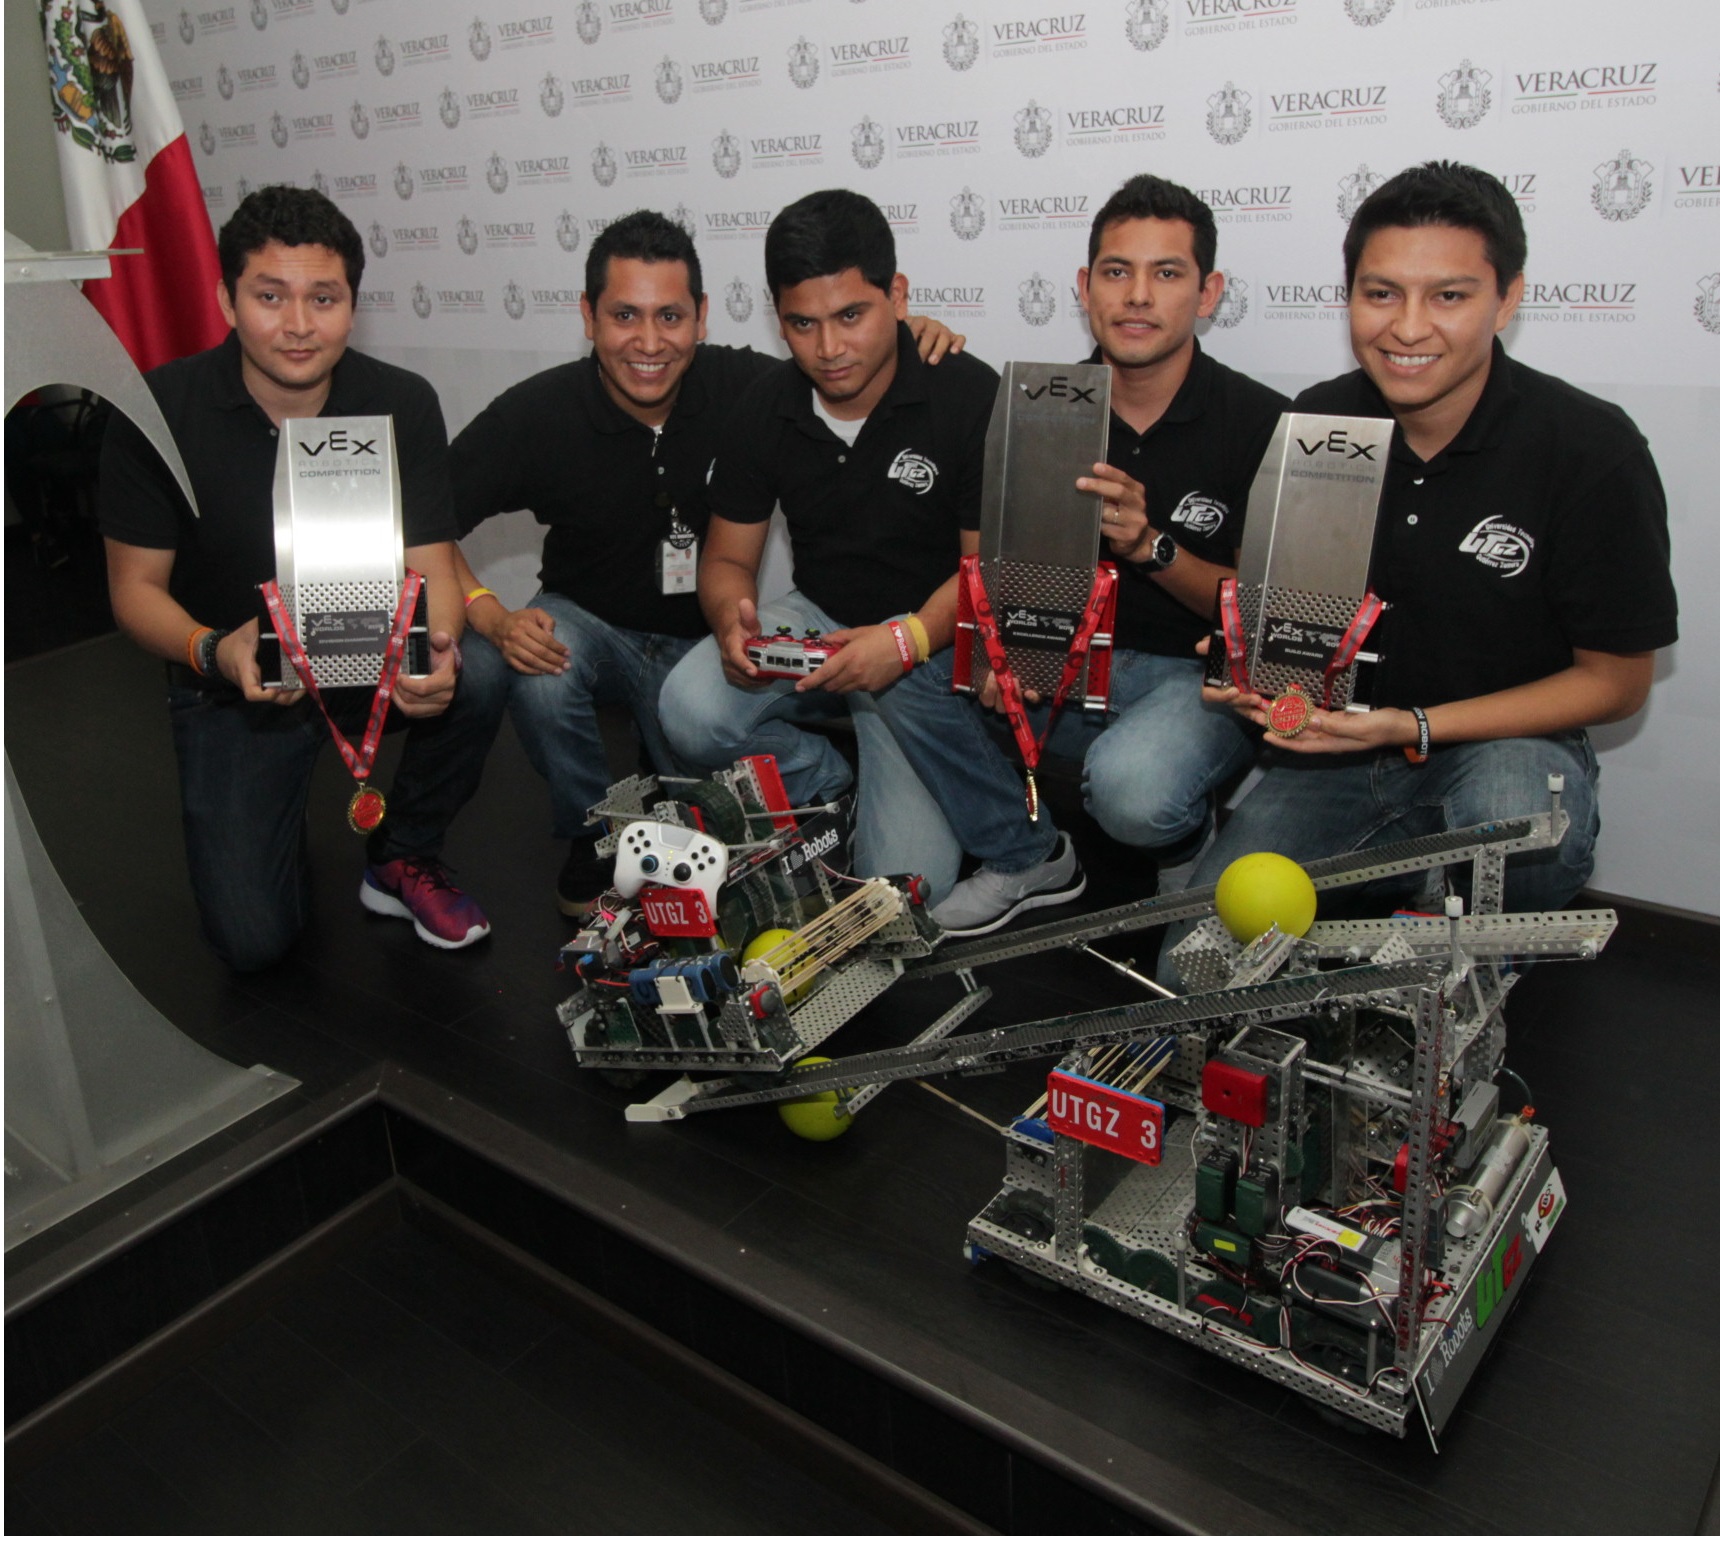 Gana Universidad Tecnológica de Gutiérrez Zamora Premio a la Excelencia en el Vex Robotics Competition